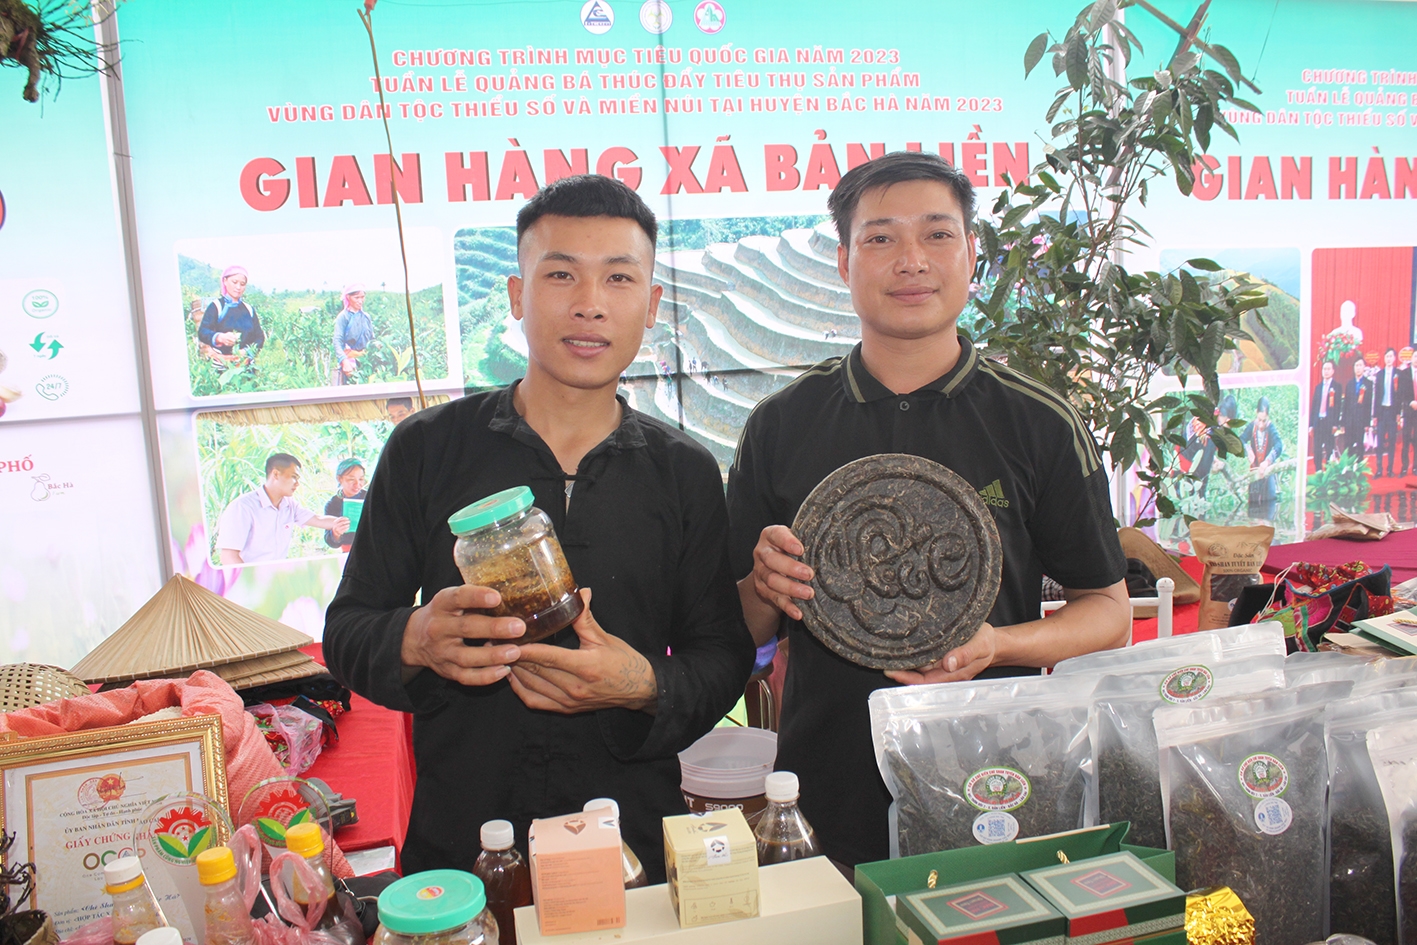 Khu trưng bày của xã Bản Liền nổi tiếng với sản phẩm OCOP 5 sao đầu tiên Lào cai - chè Shan tuyết hữu cơ nổi tiếng trong nước và thế giới